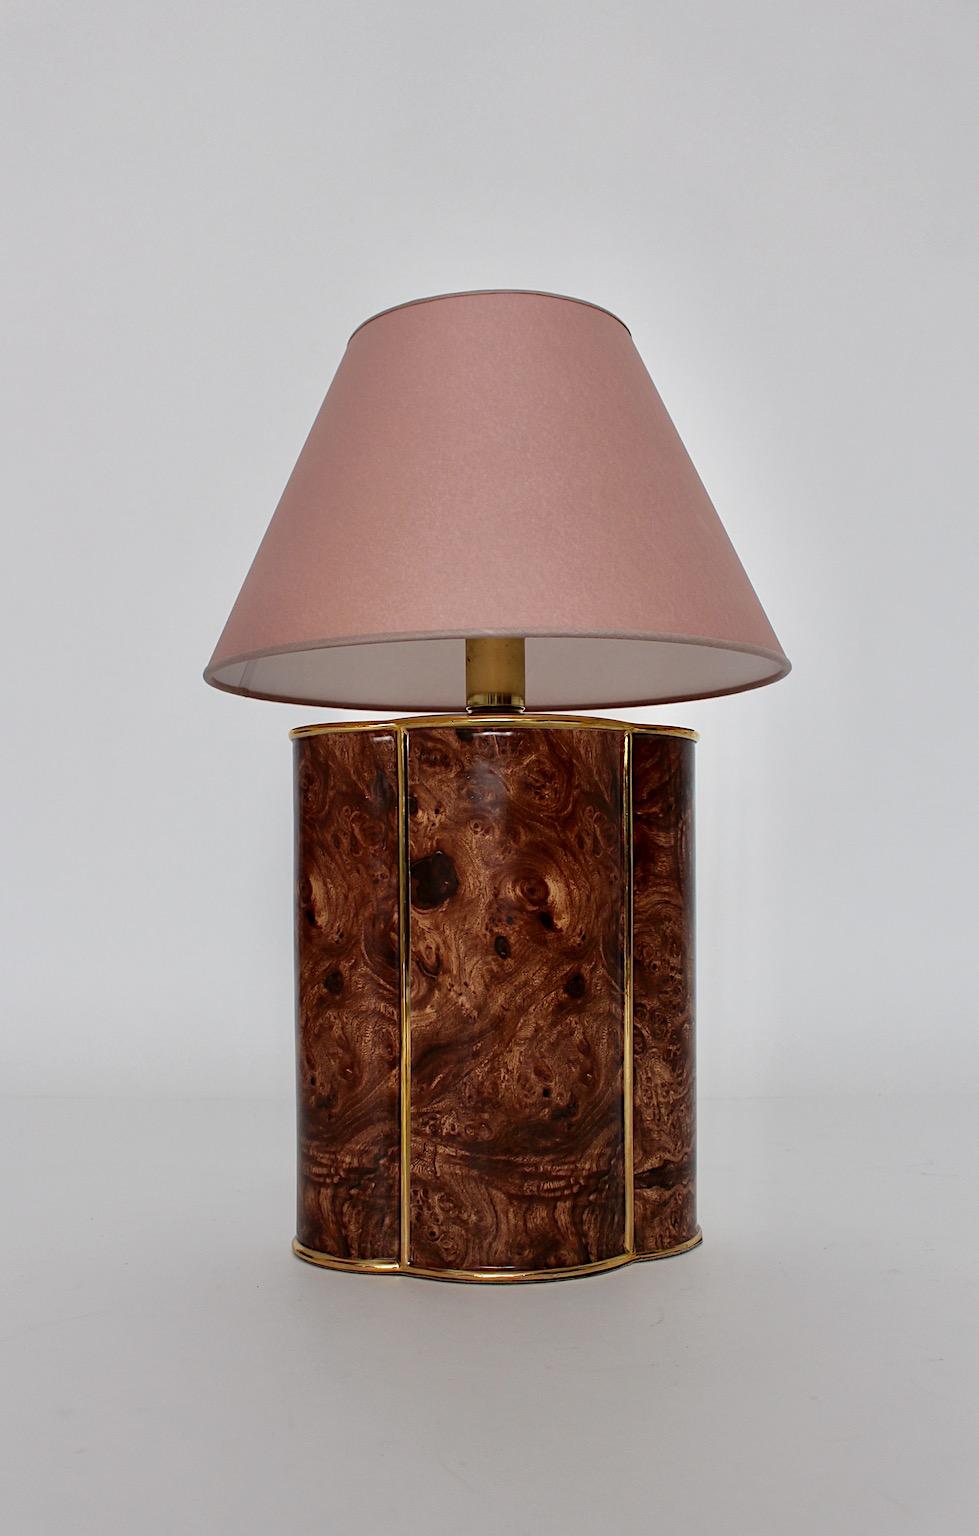 Lampe de table vintage moderne en céramique aux couleurs brun-or conçue et fabriquée en Italie, années 1990.
Une belle lampe de table en céramique marron avec des détails dorés et un nouvel abat-jour fait à la main en papier de couleur rose